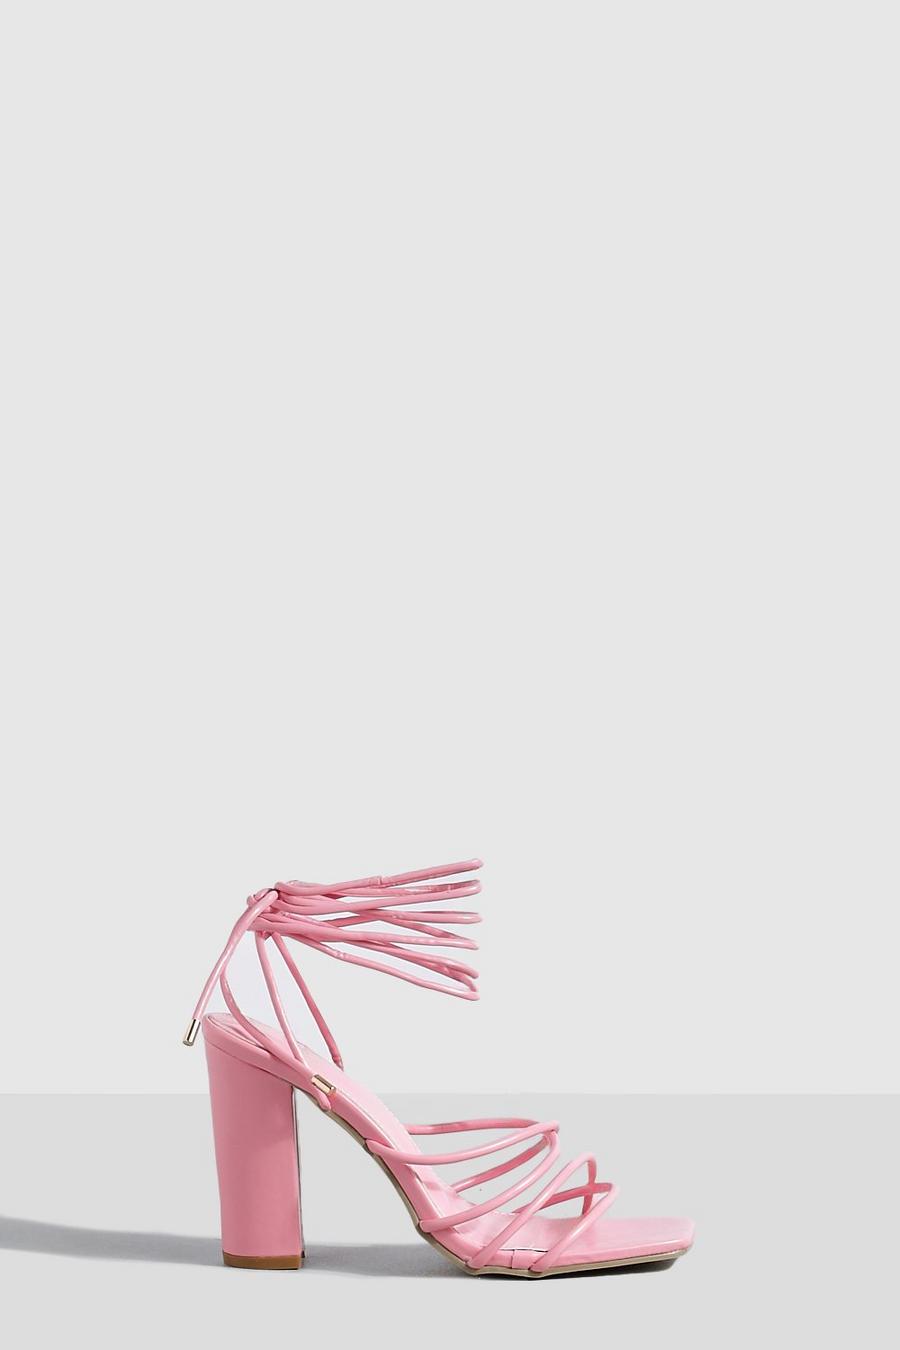 Sandalias de tacón grueso con tiras cruzadas, Pink rosa